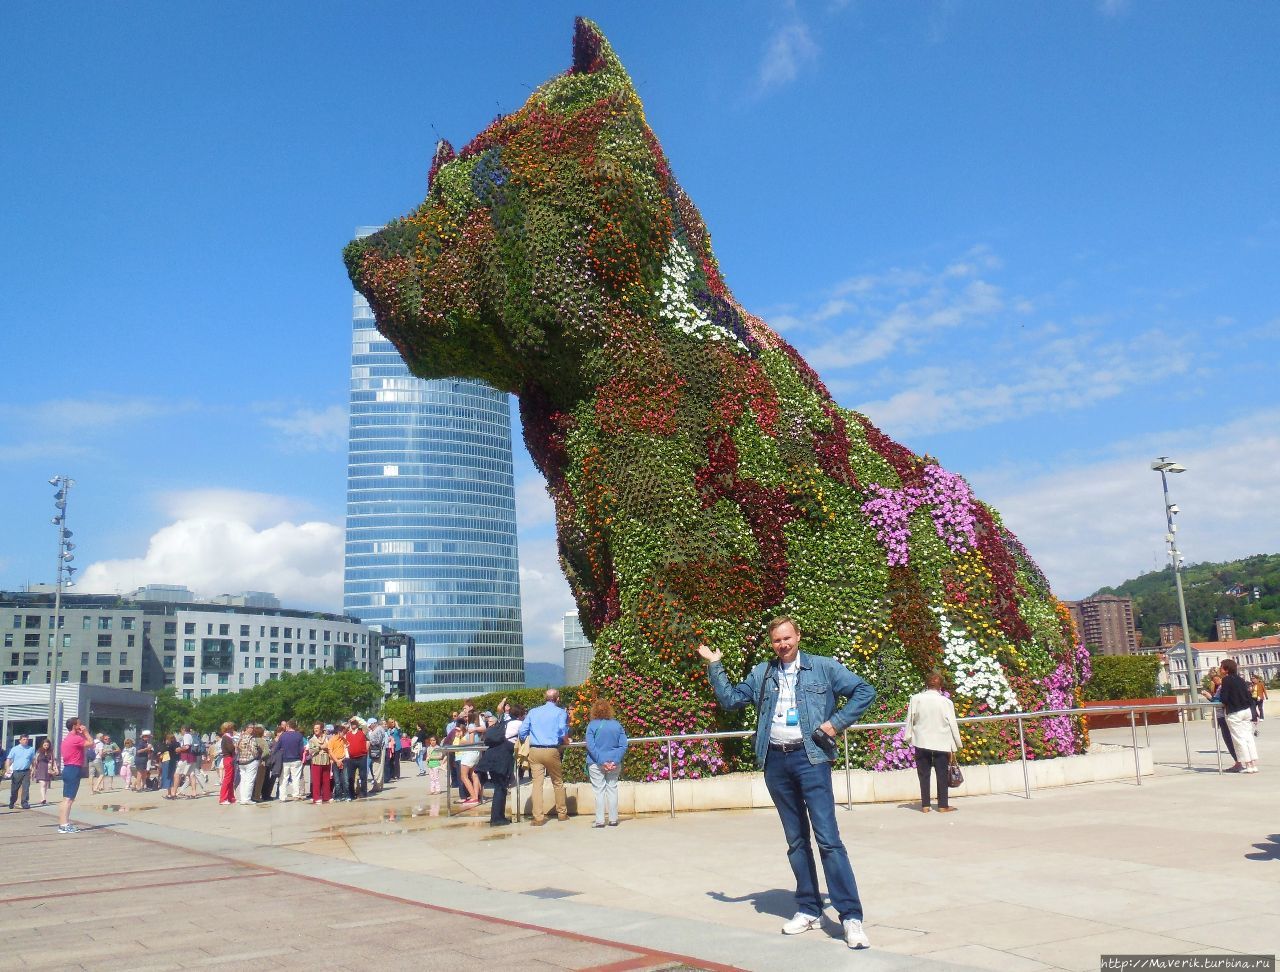 Цветочная собака по кличке Пуппи. Бильбао, Испания